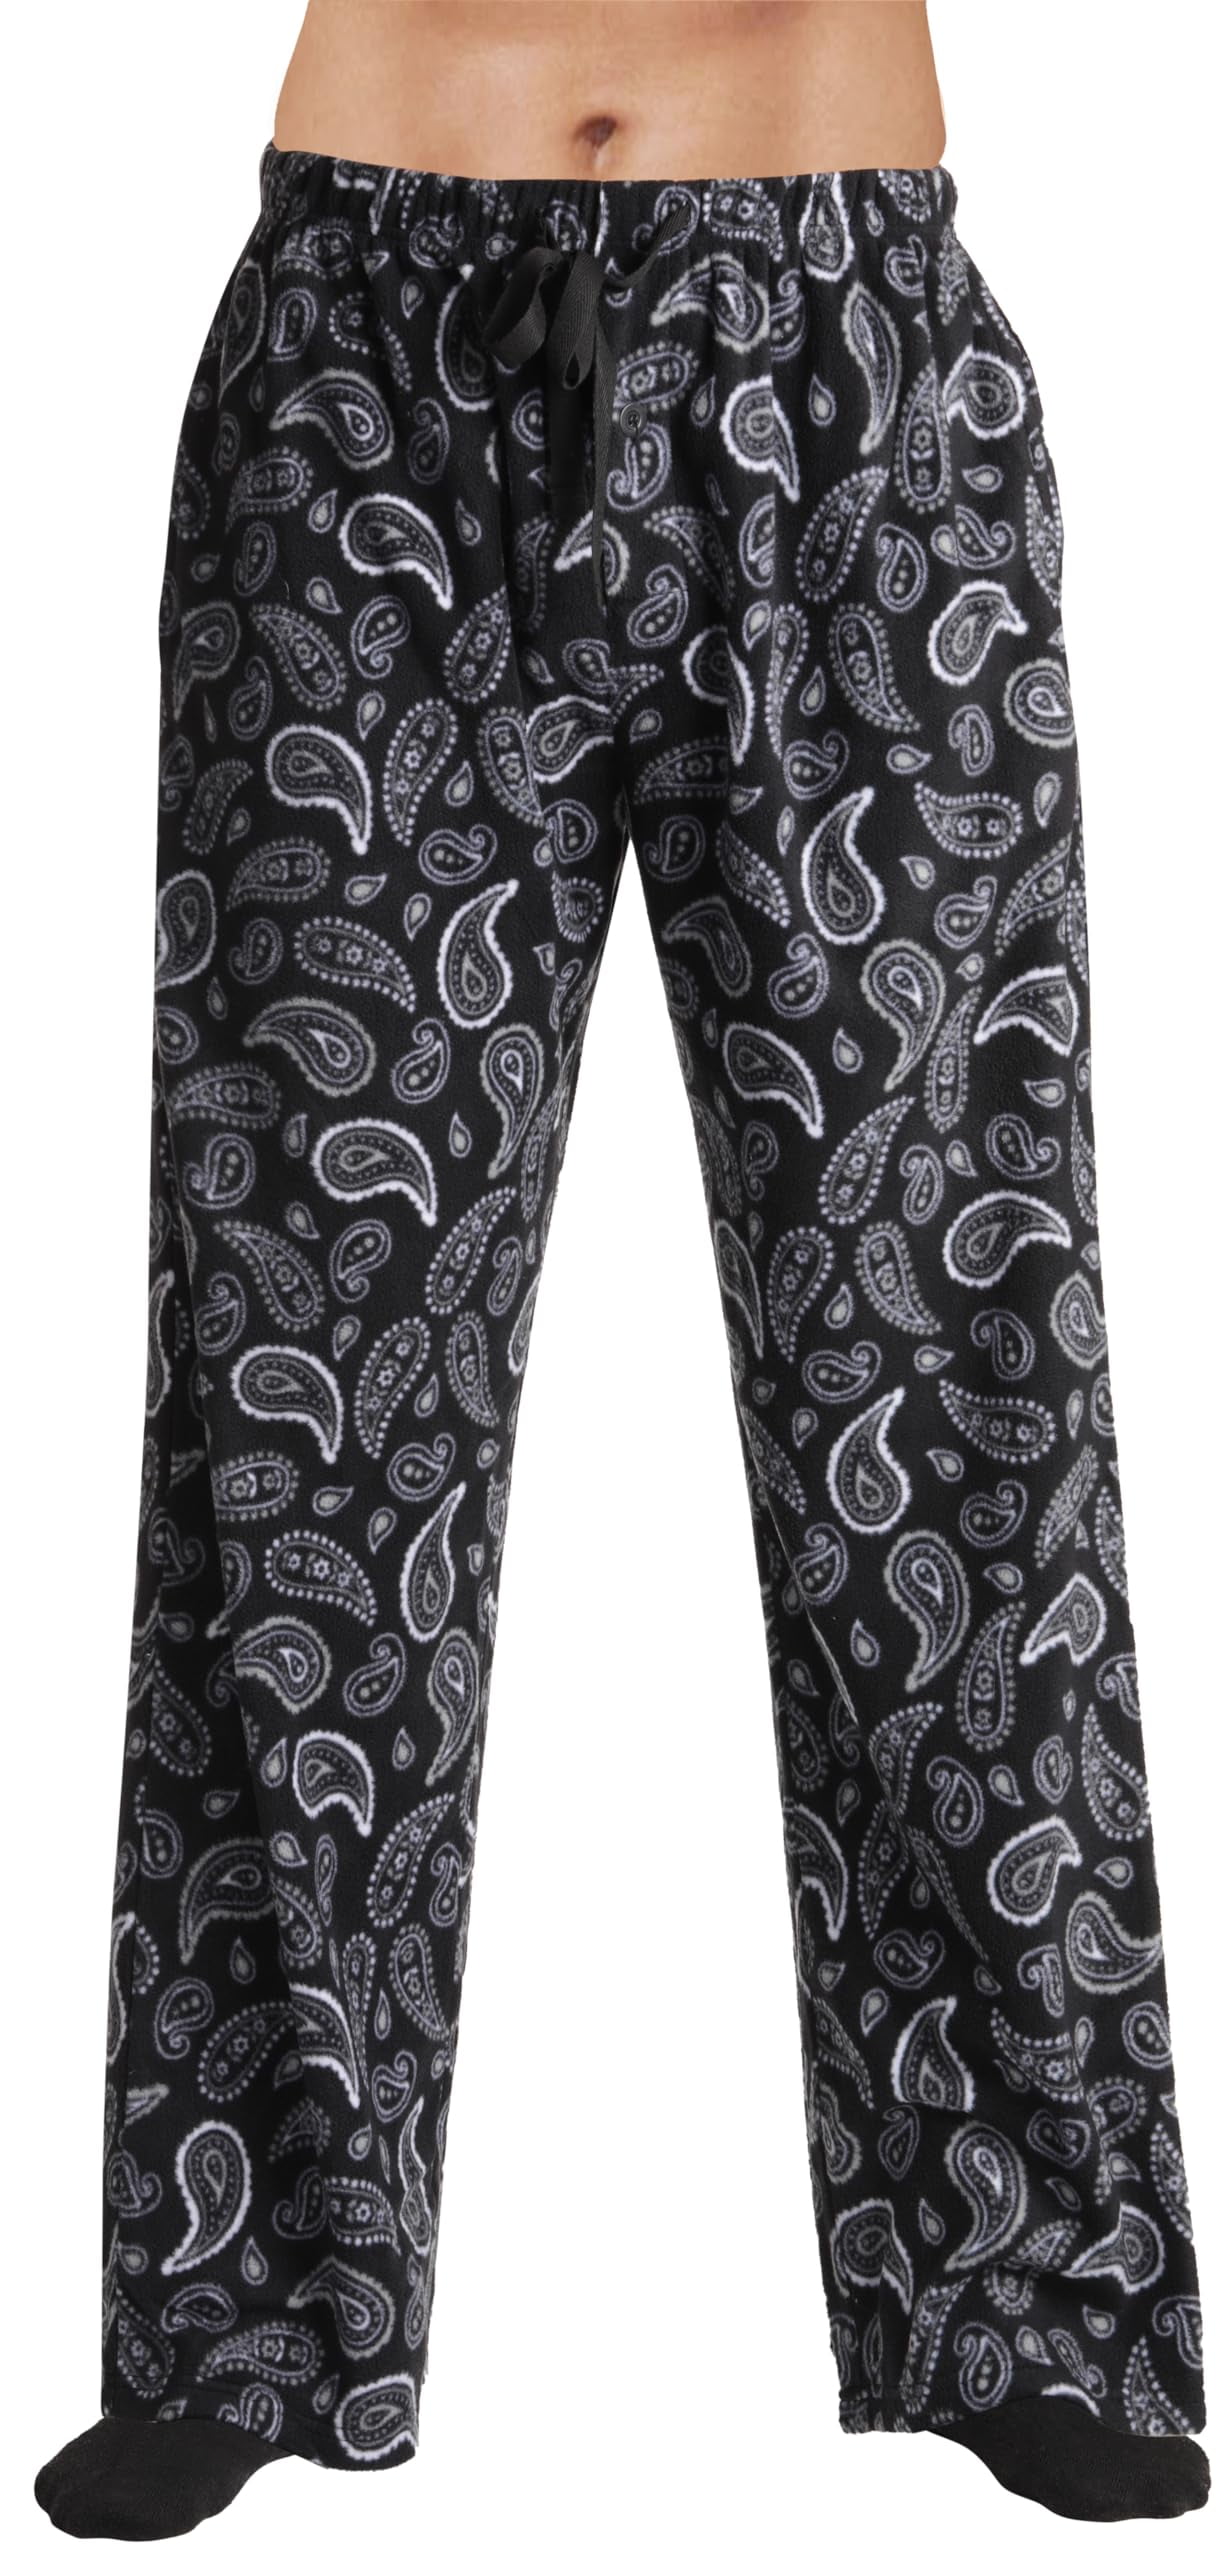 #followme Men's Microfleece Pajamas - Paisley Bandana Print Pajama ...